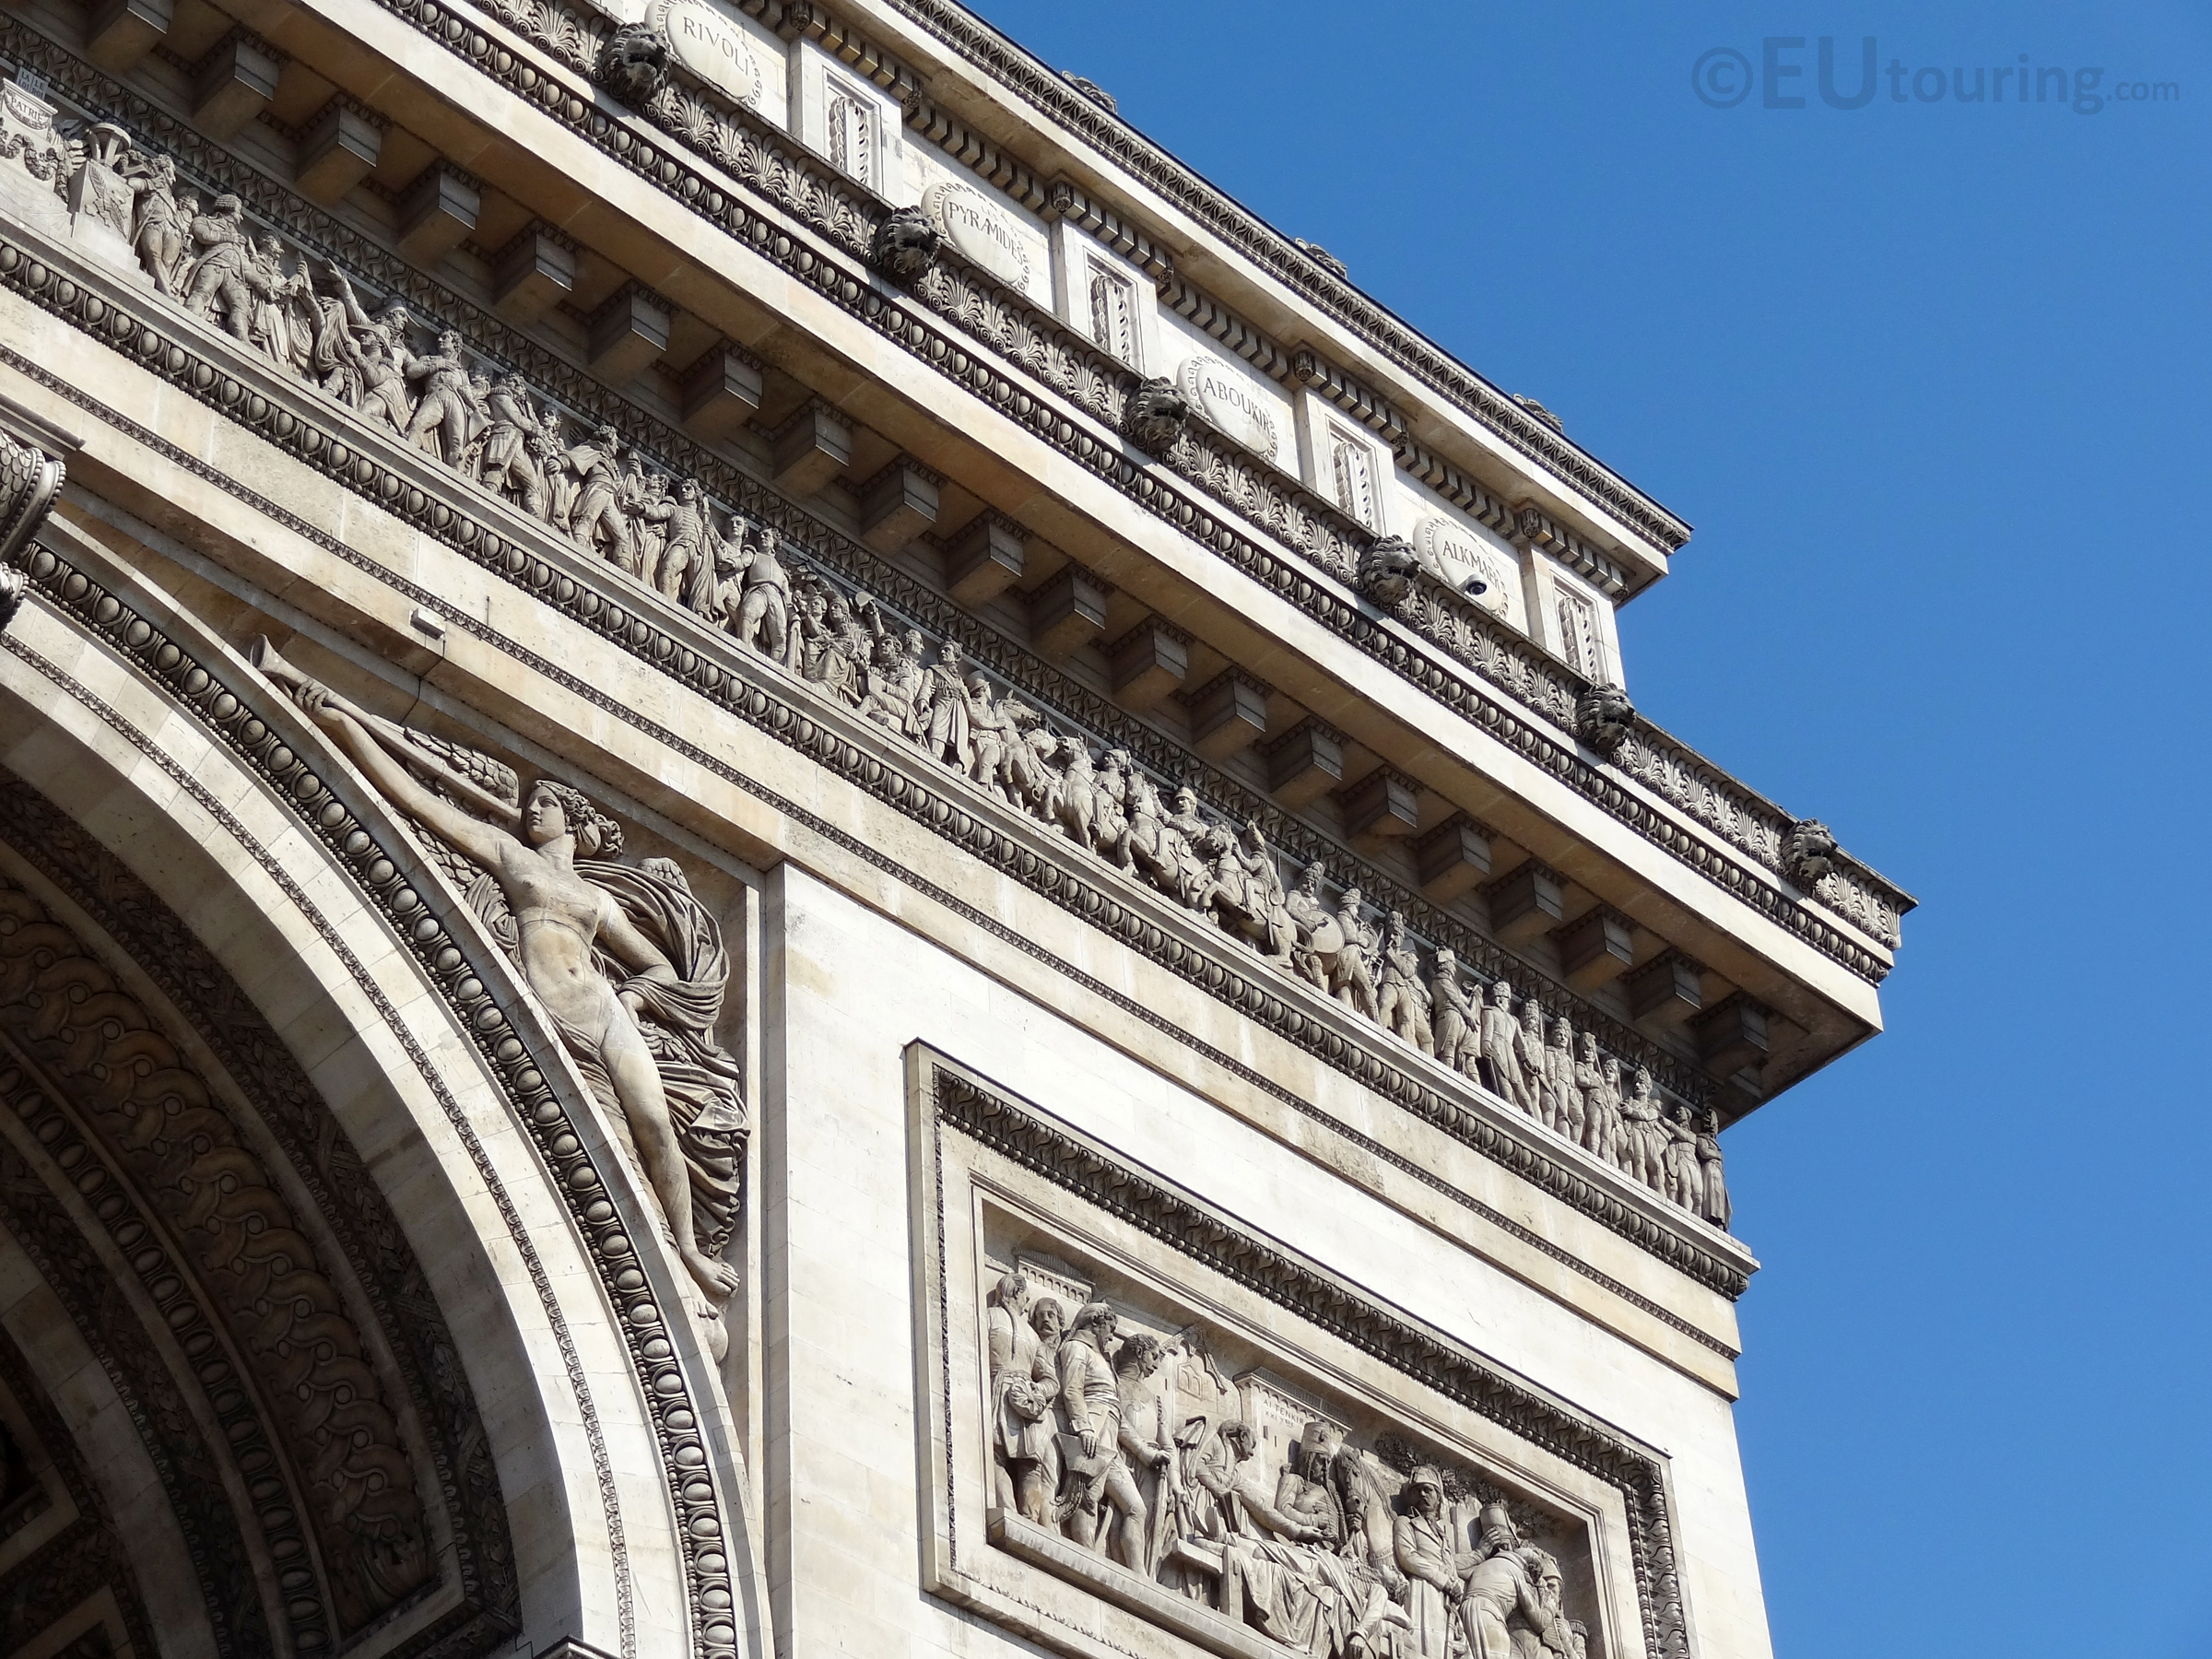 Details of the Arc de Triomphe